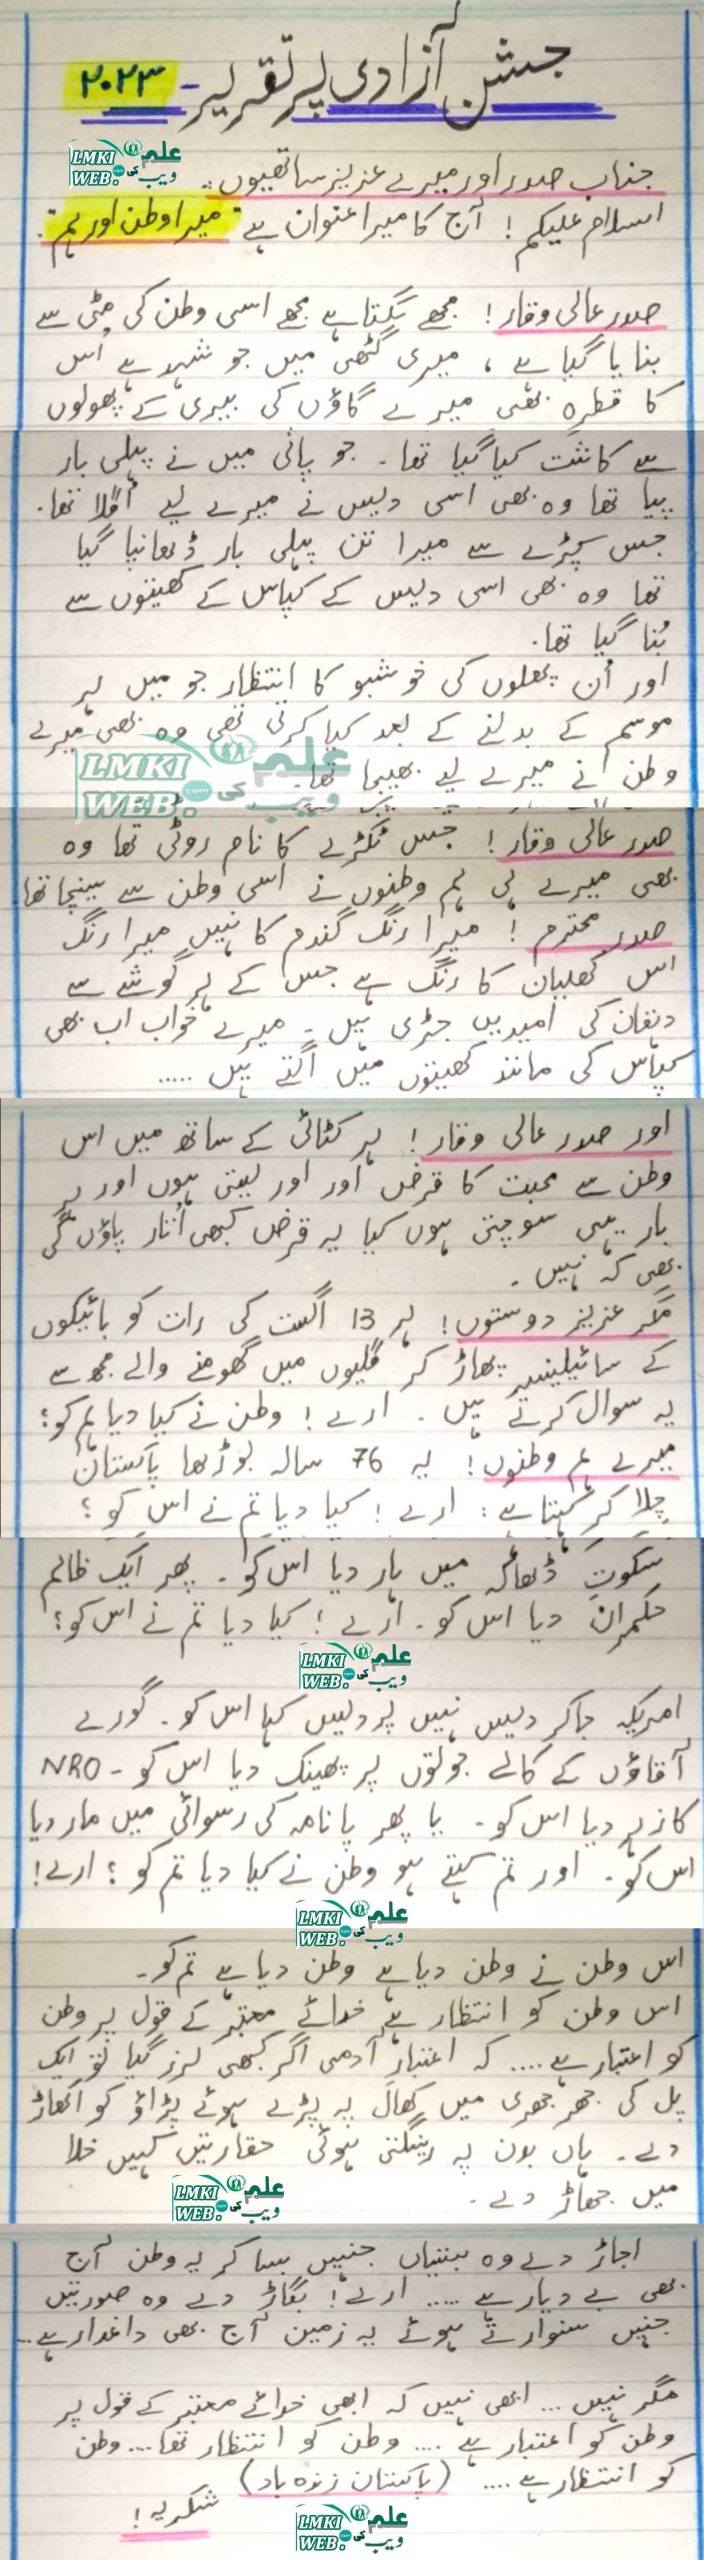 speech on 14 august 1947 in urdu